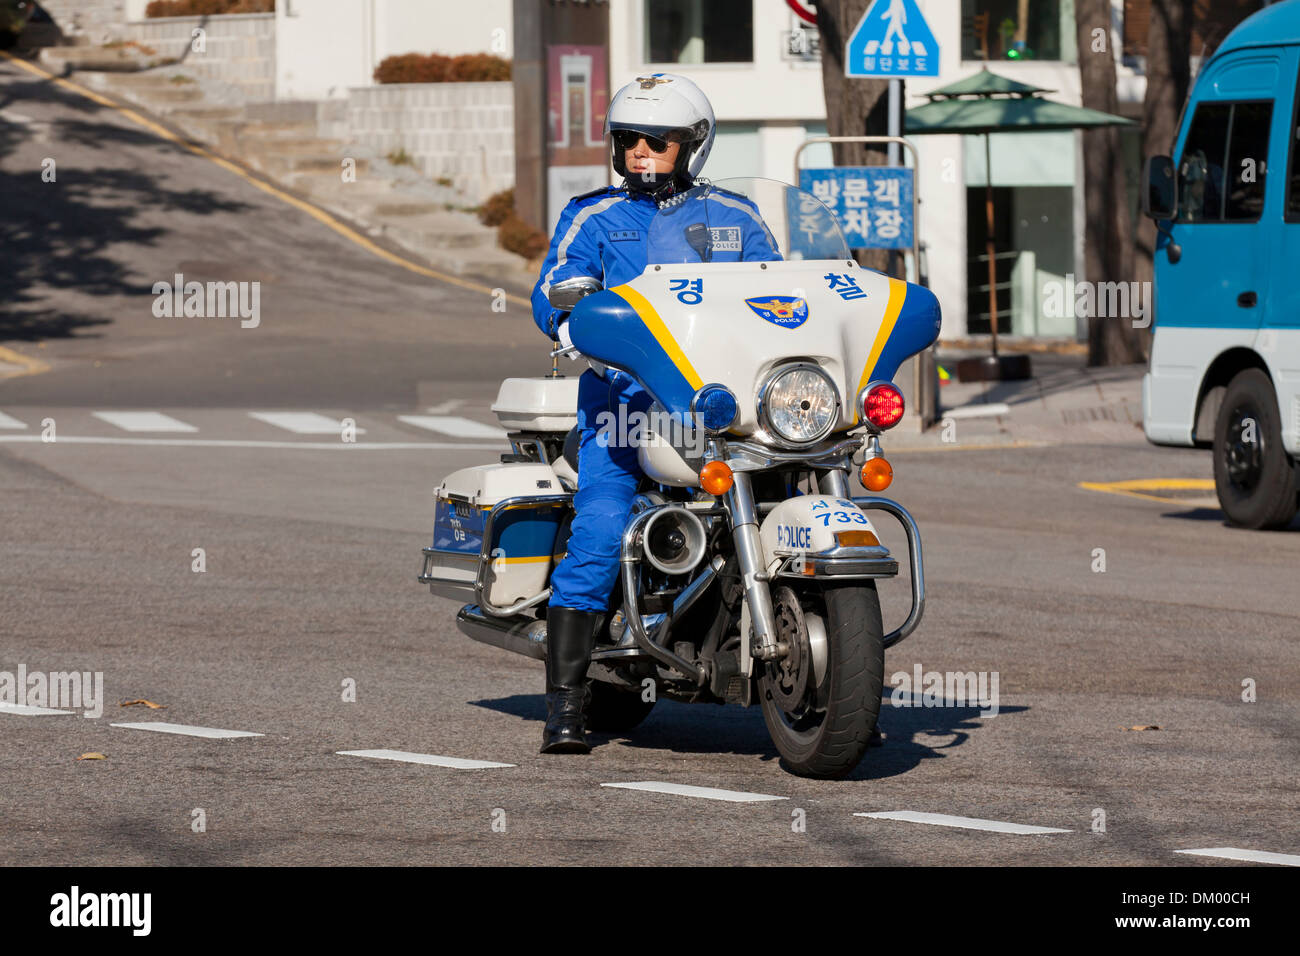 Policier à moto - Séoul, Corée du Sud Banque D'Images